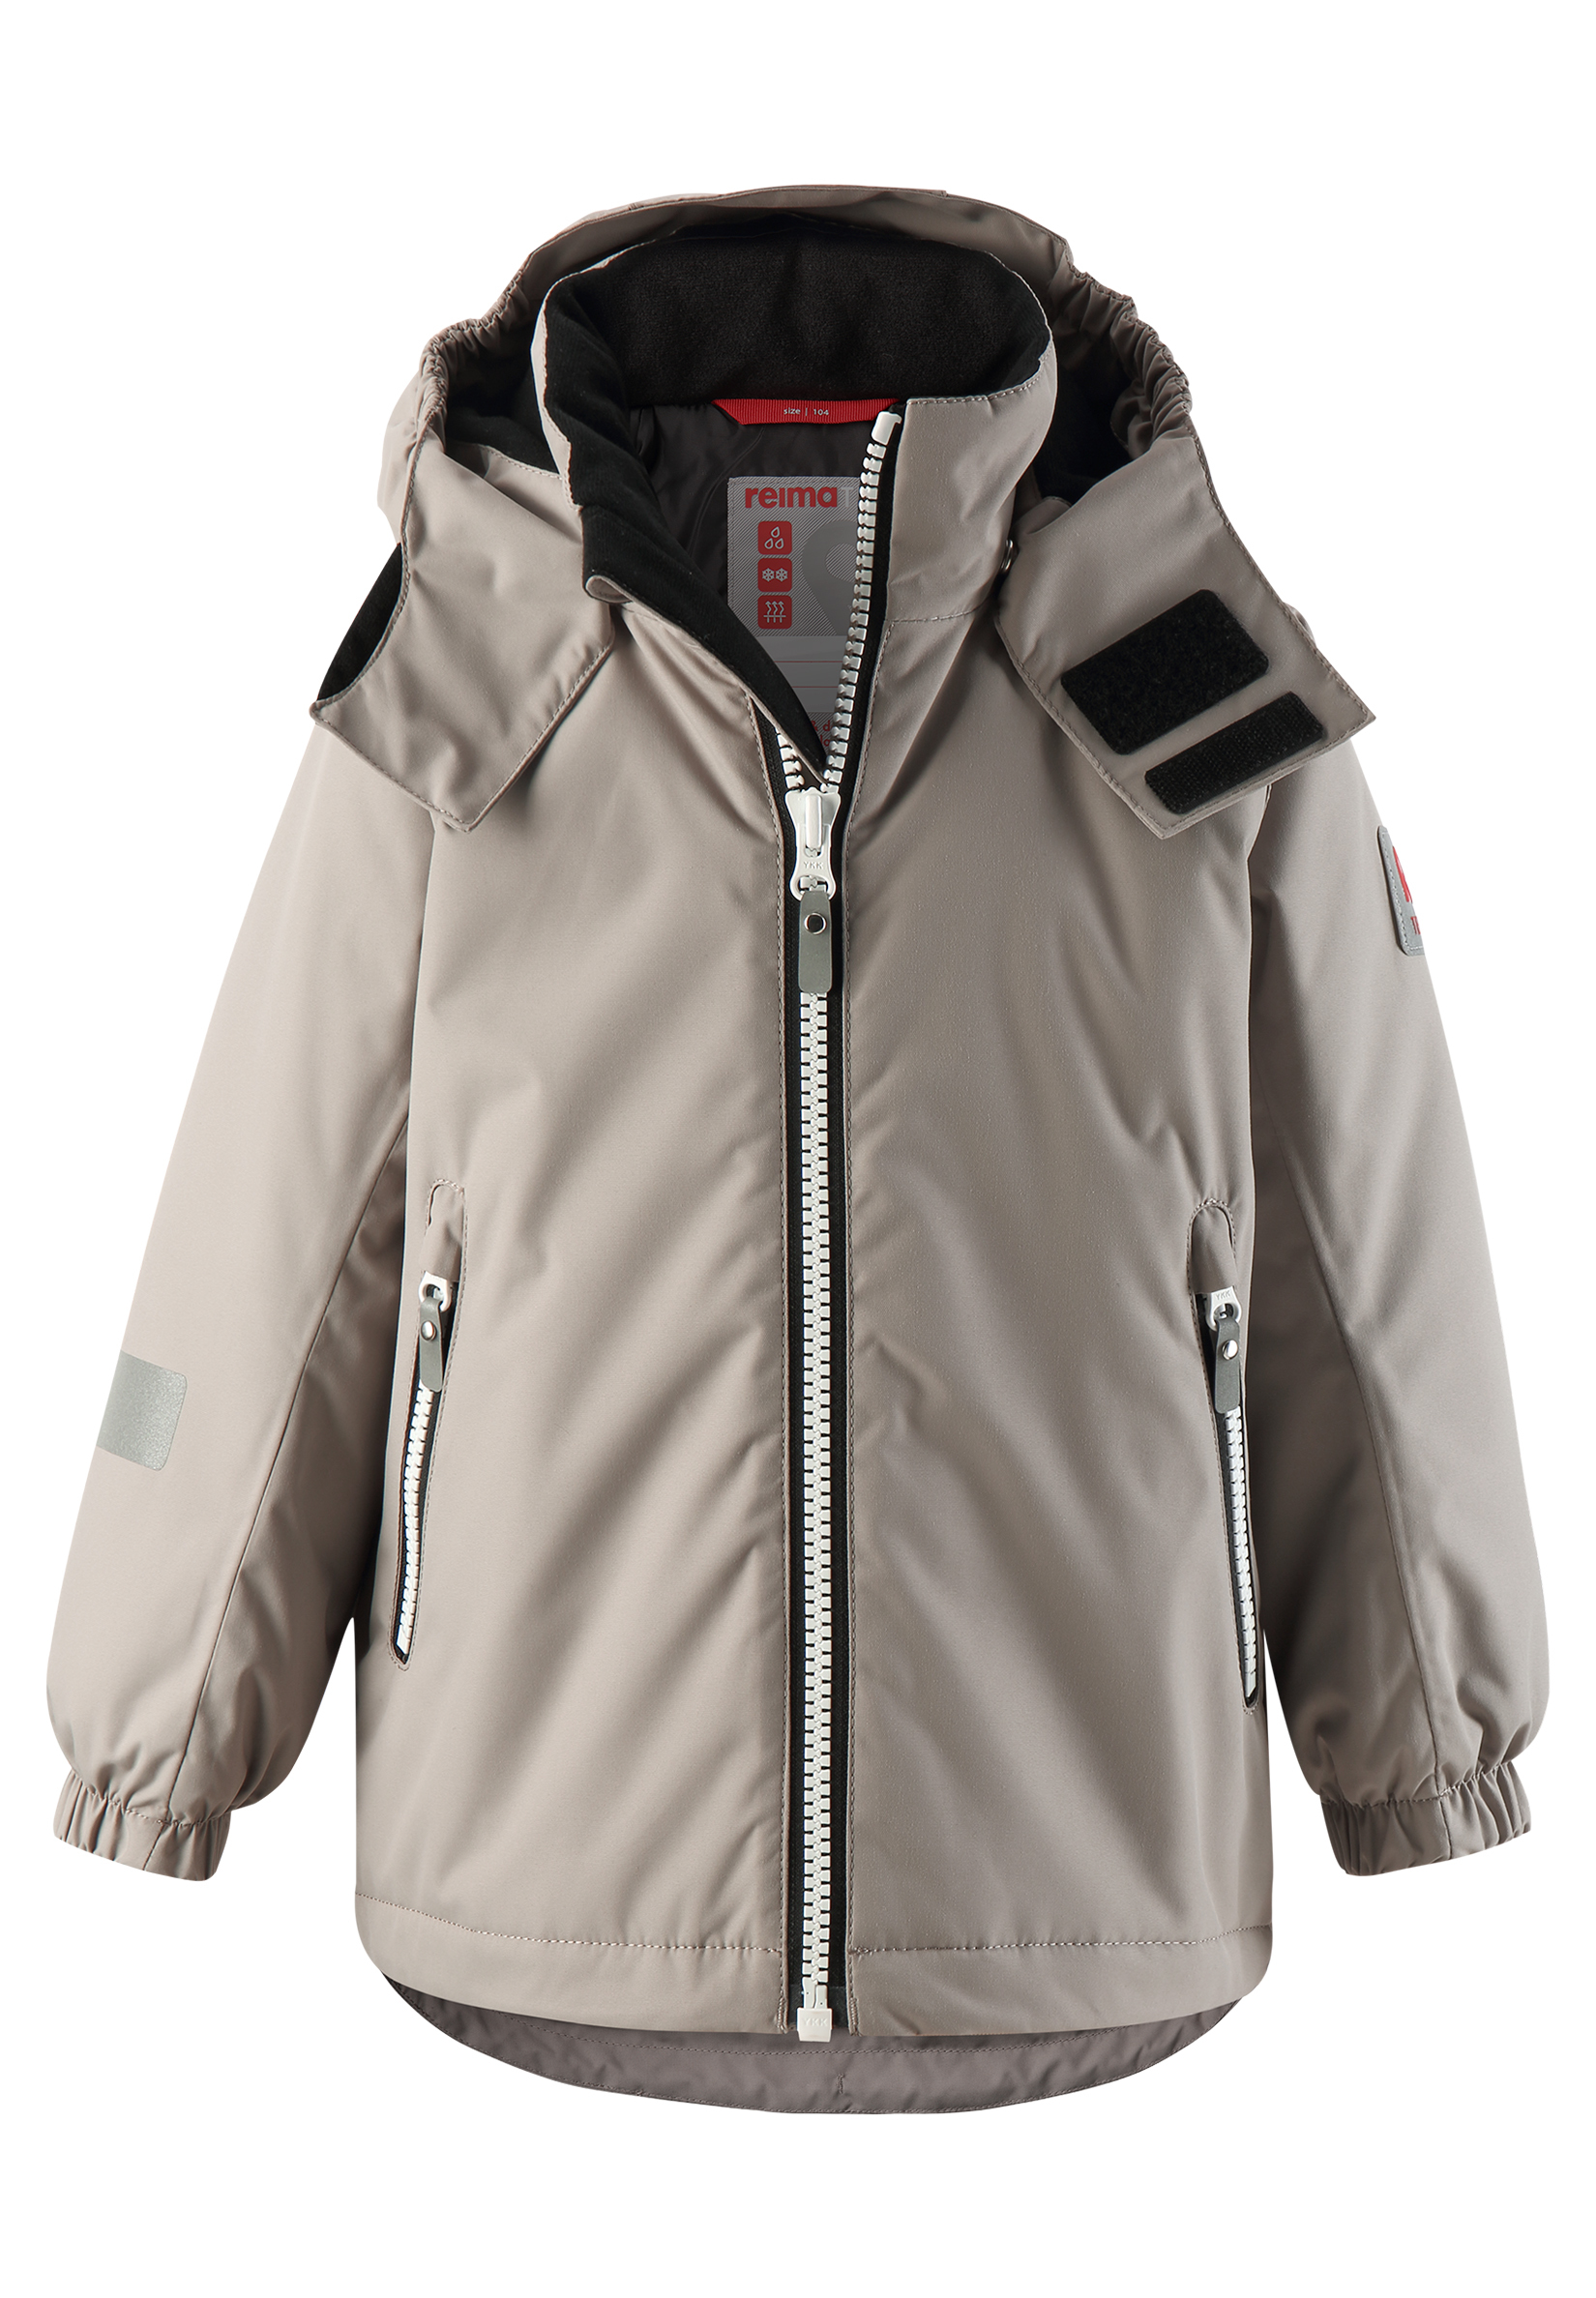 Куртка детская Reima Reimatec Polaris зимняя, серый куртка reima reimatec silda 521610 размер 152 серый